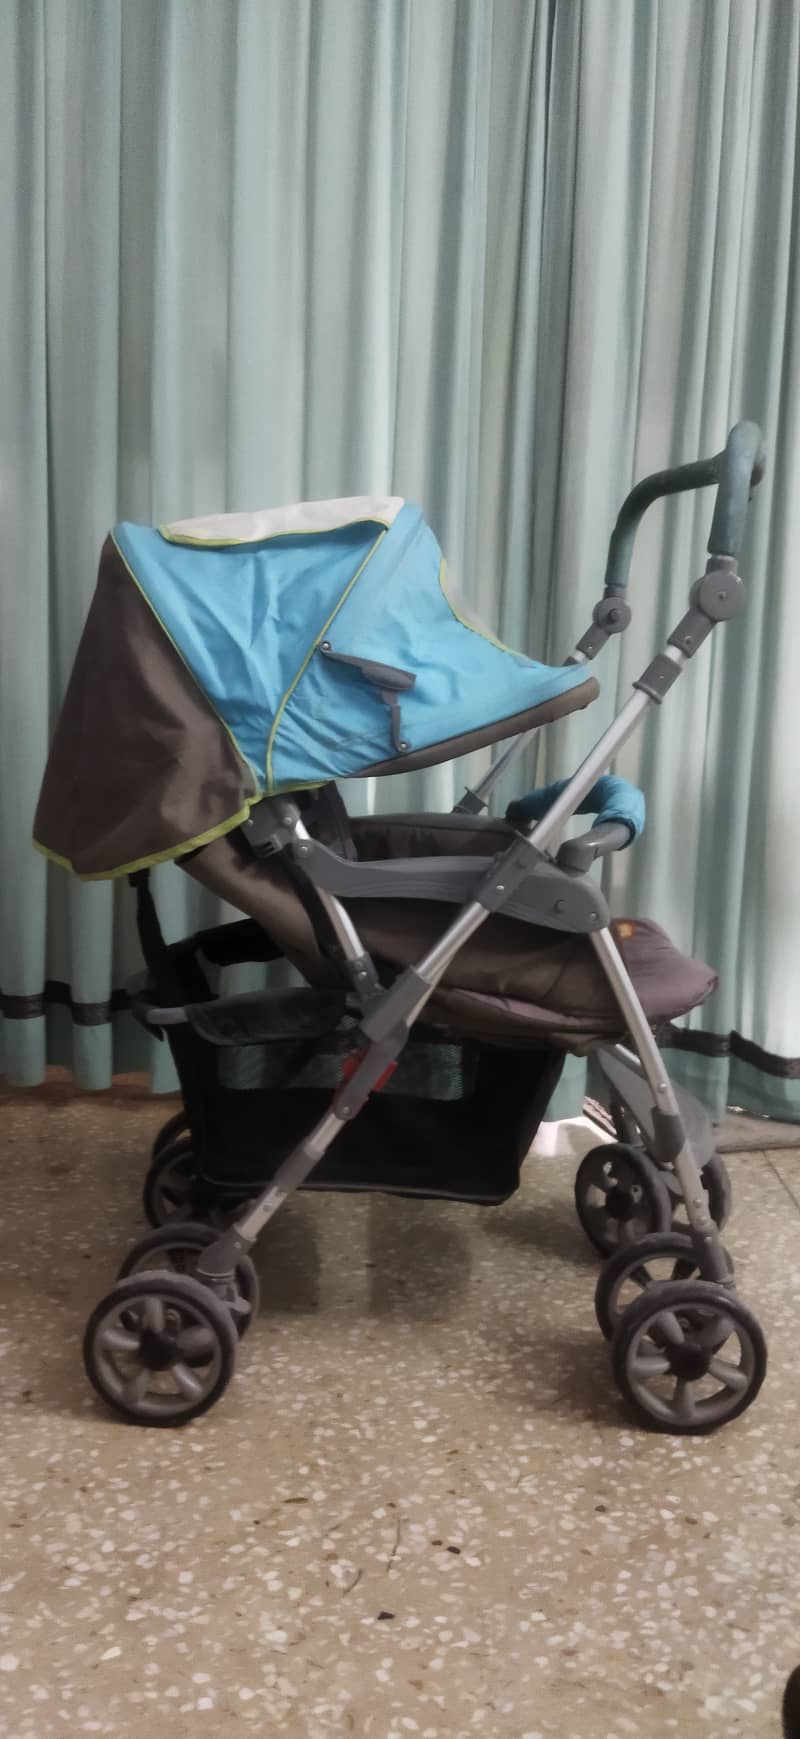 Junior's Brand imported baby stroller / pram 3